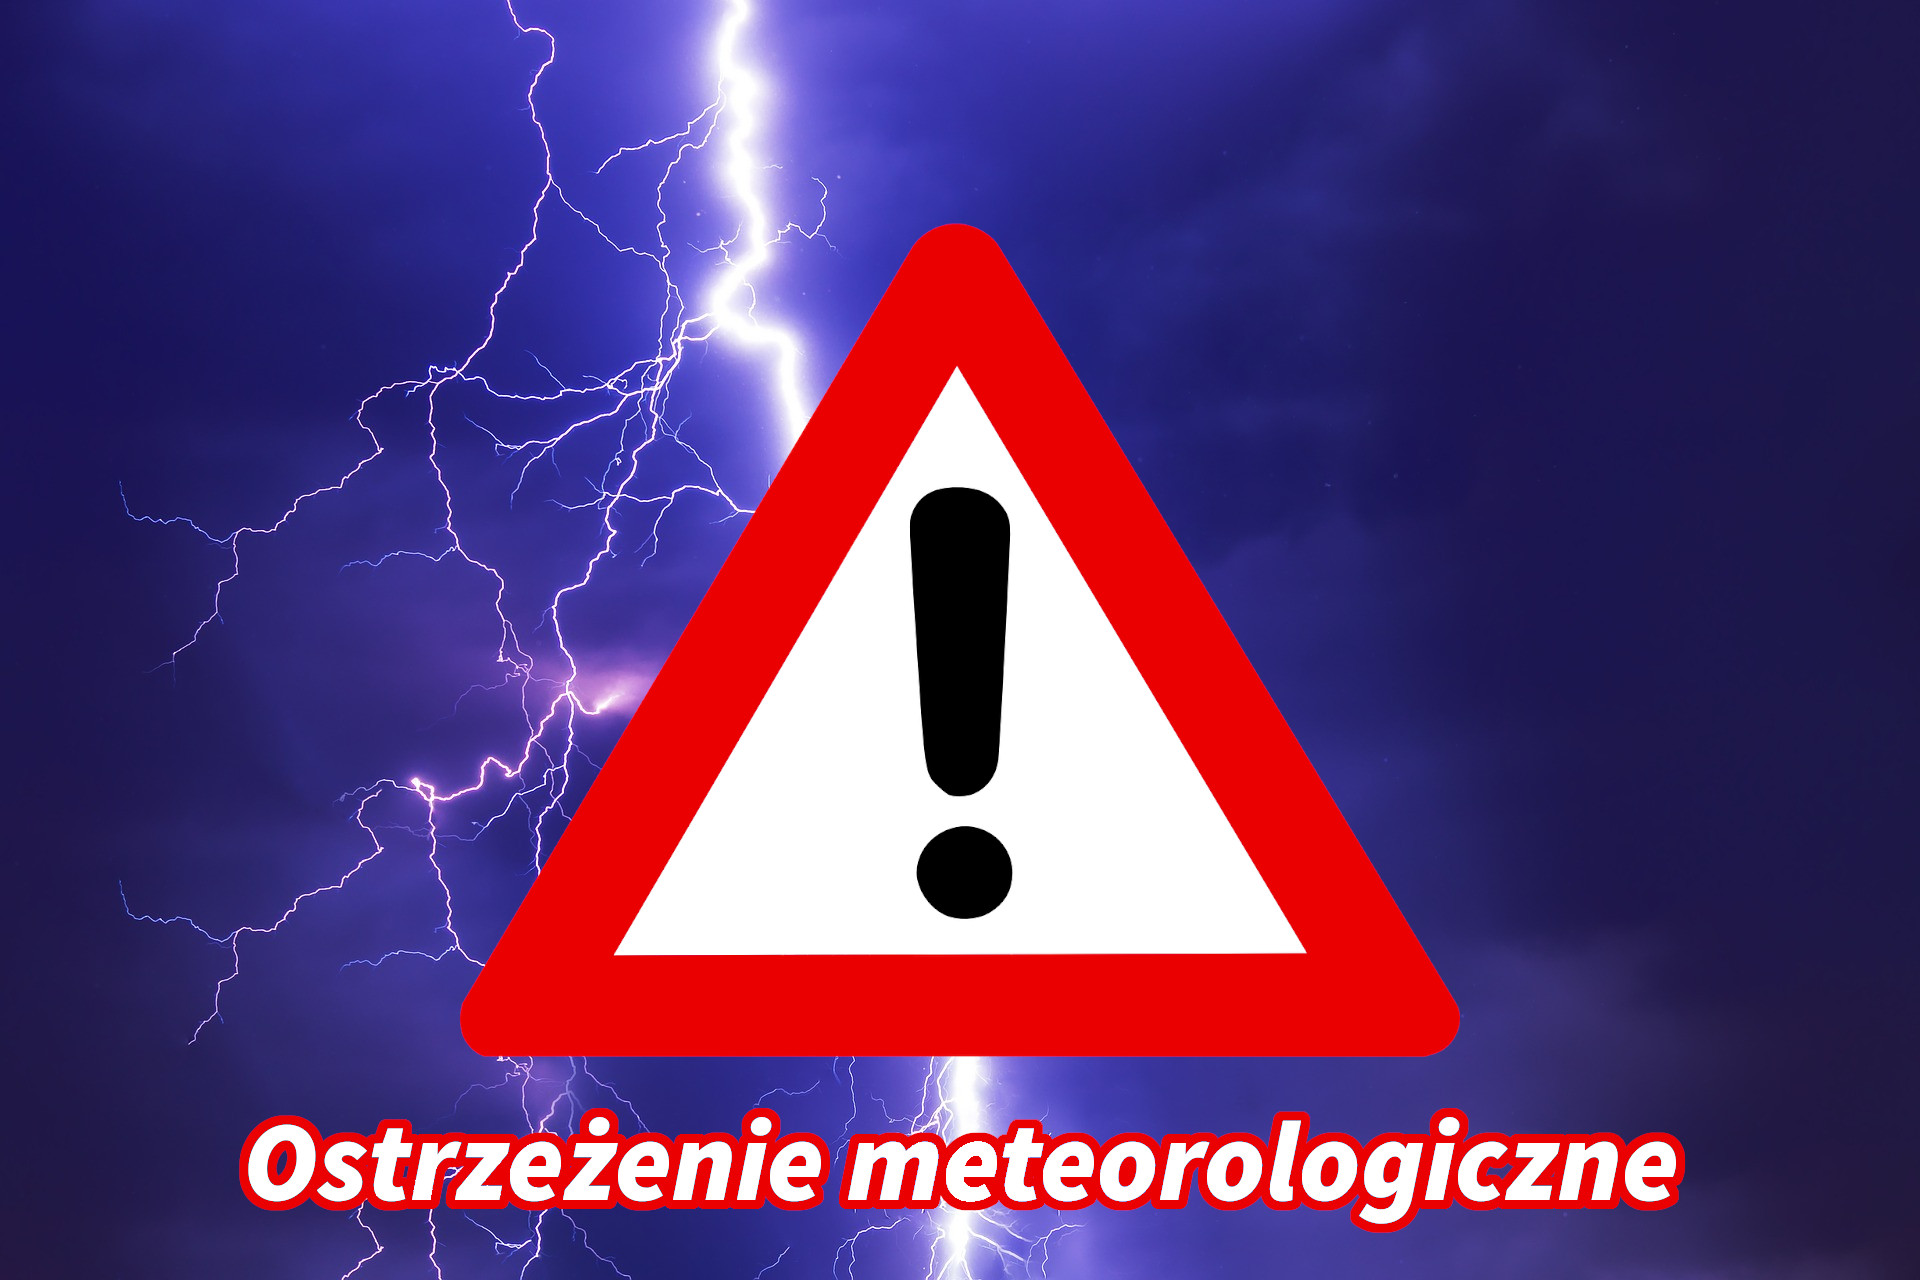 Ostrzeżenie meteo nr 208 - intensywne opady deszczu